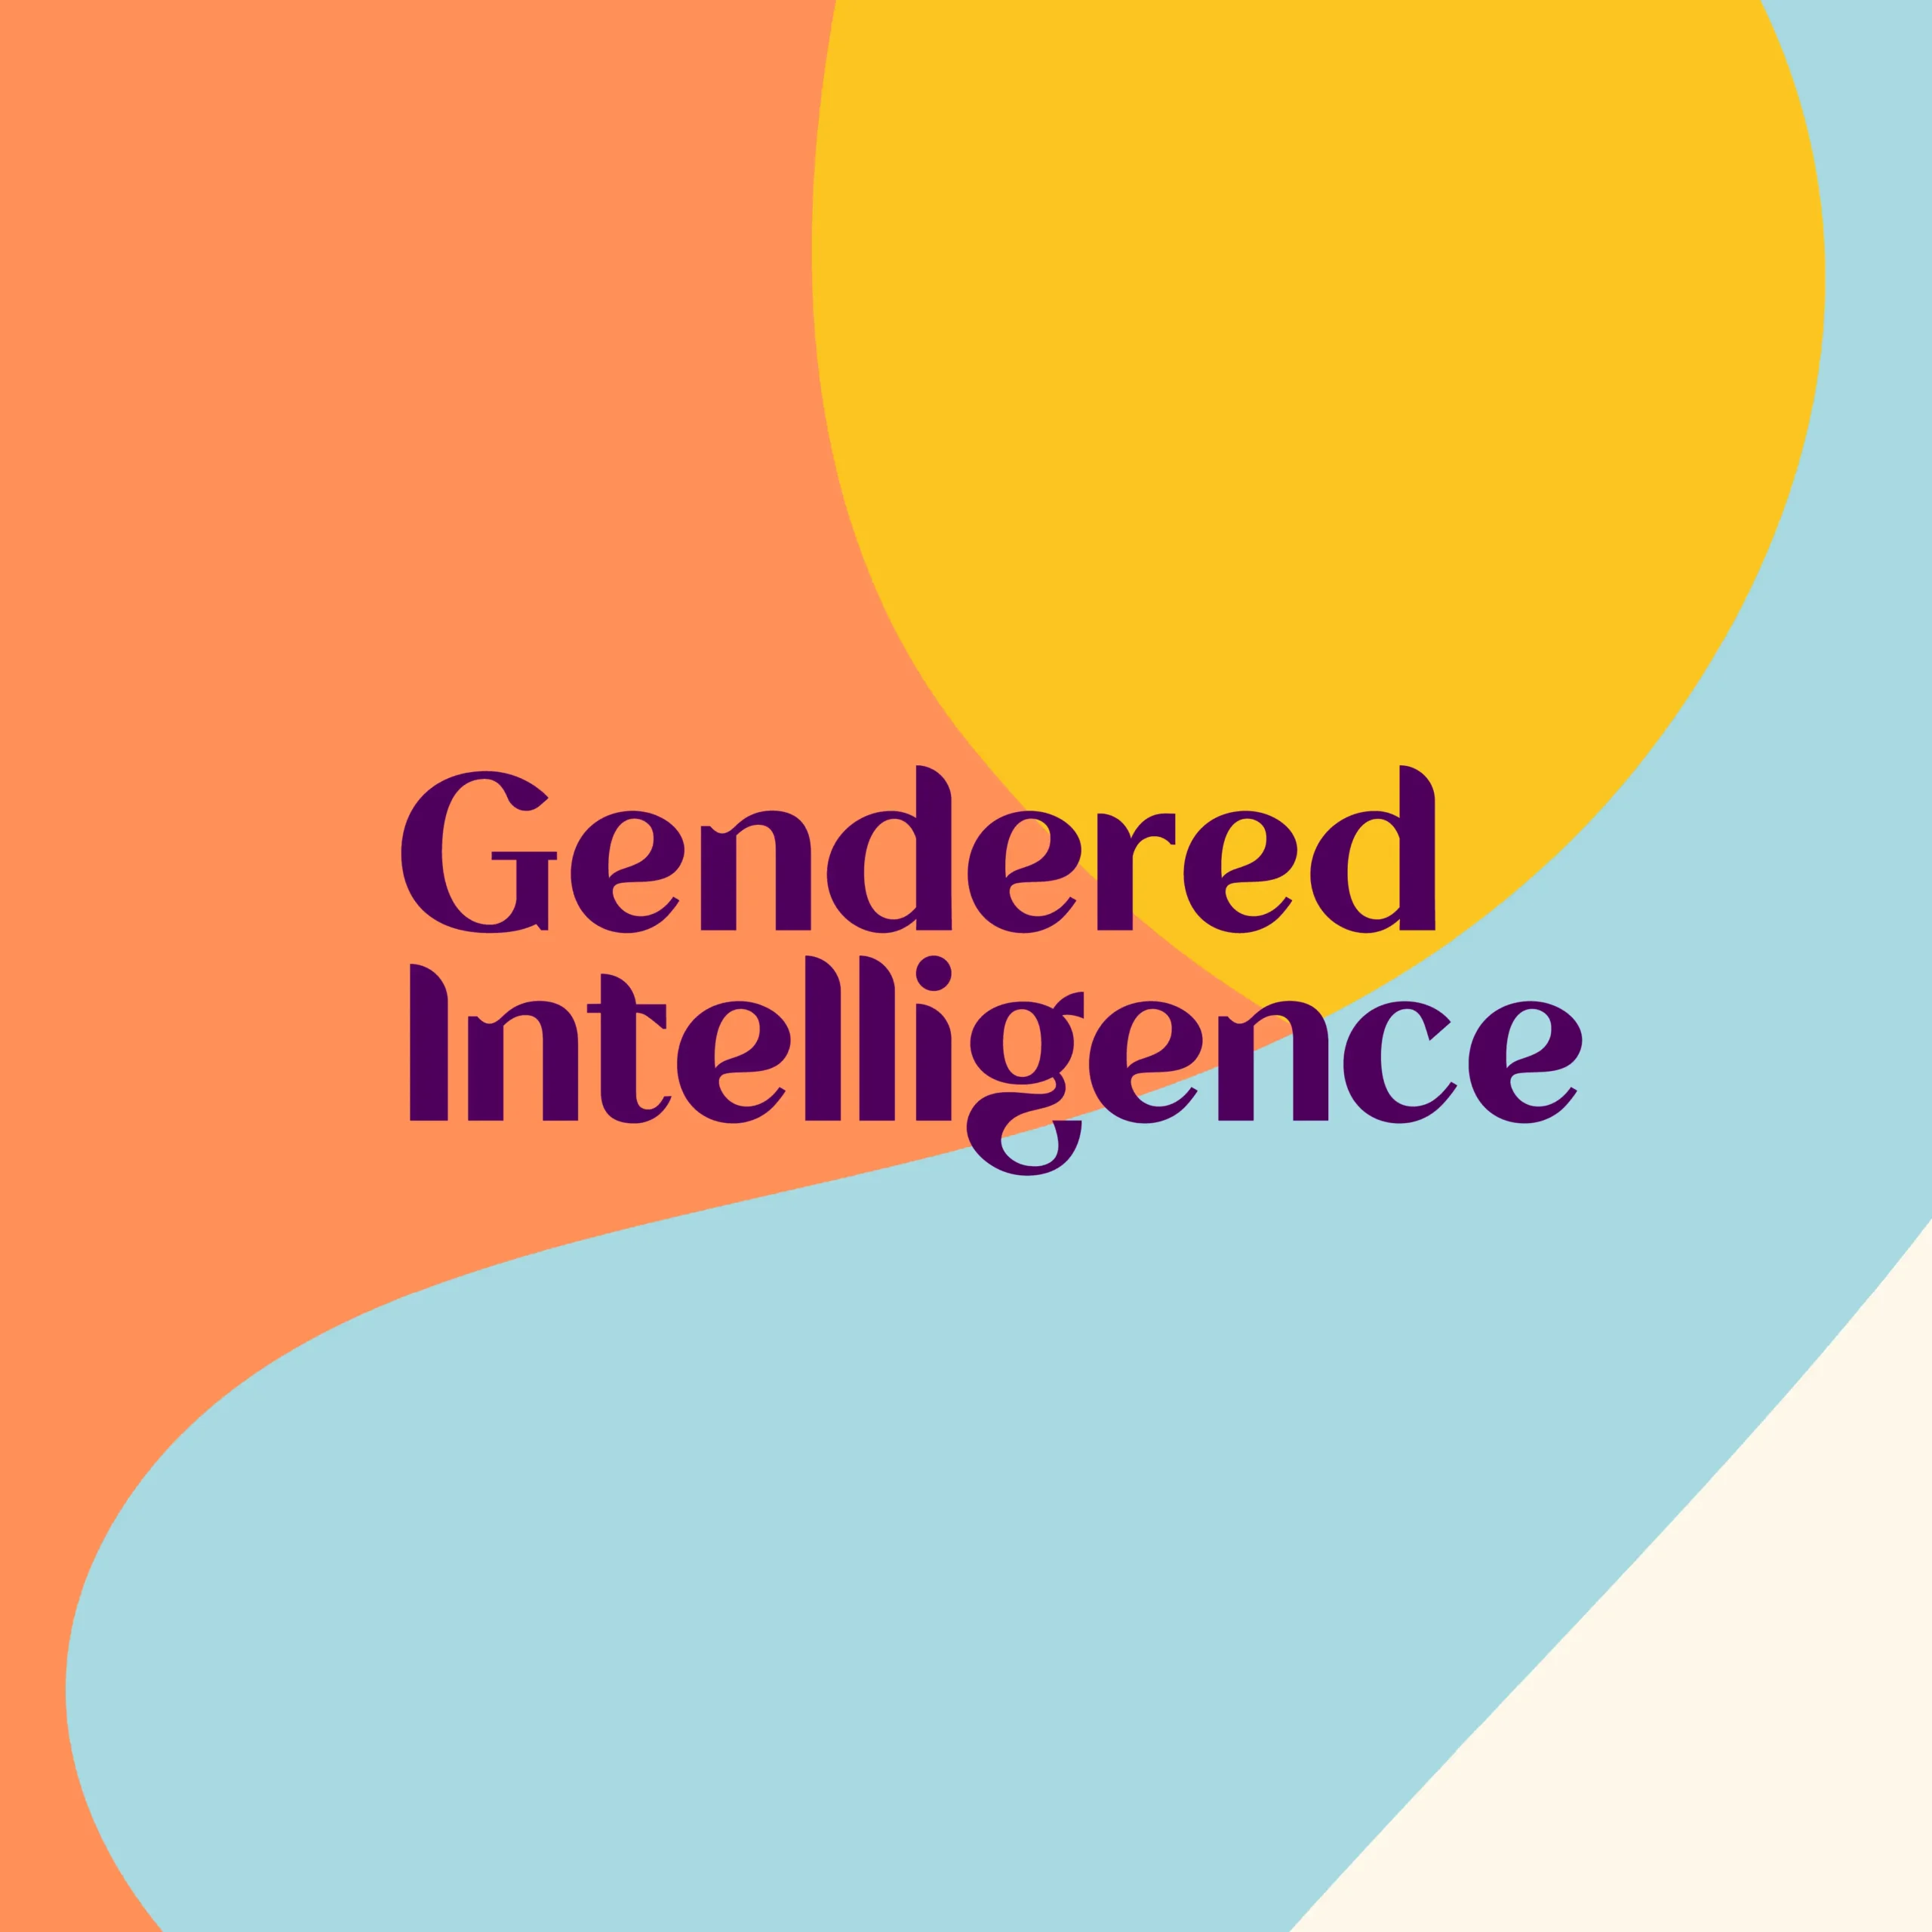 estudio inteligencia de genero - Dónde se basa la inteligencia de género